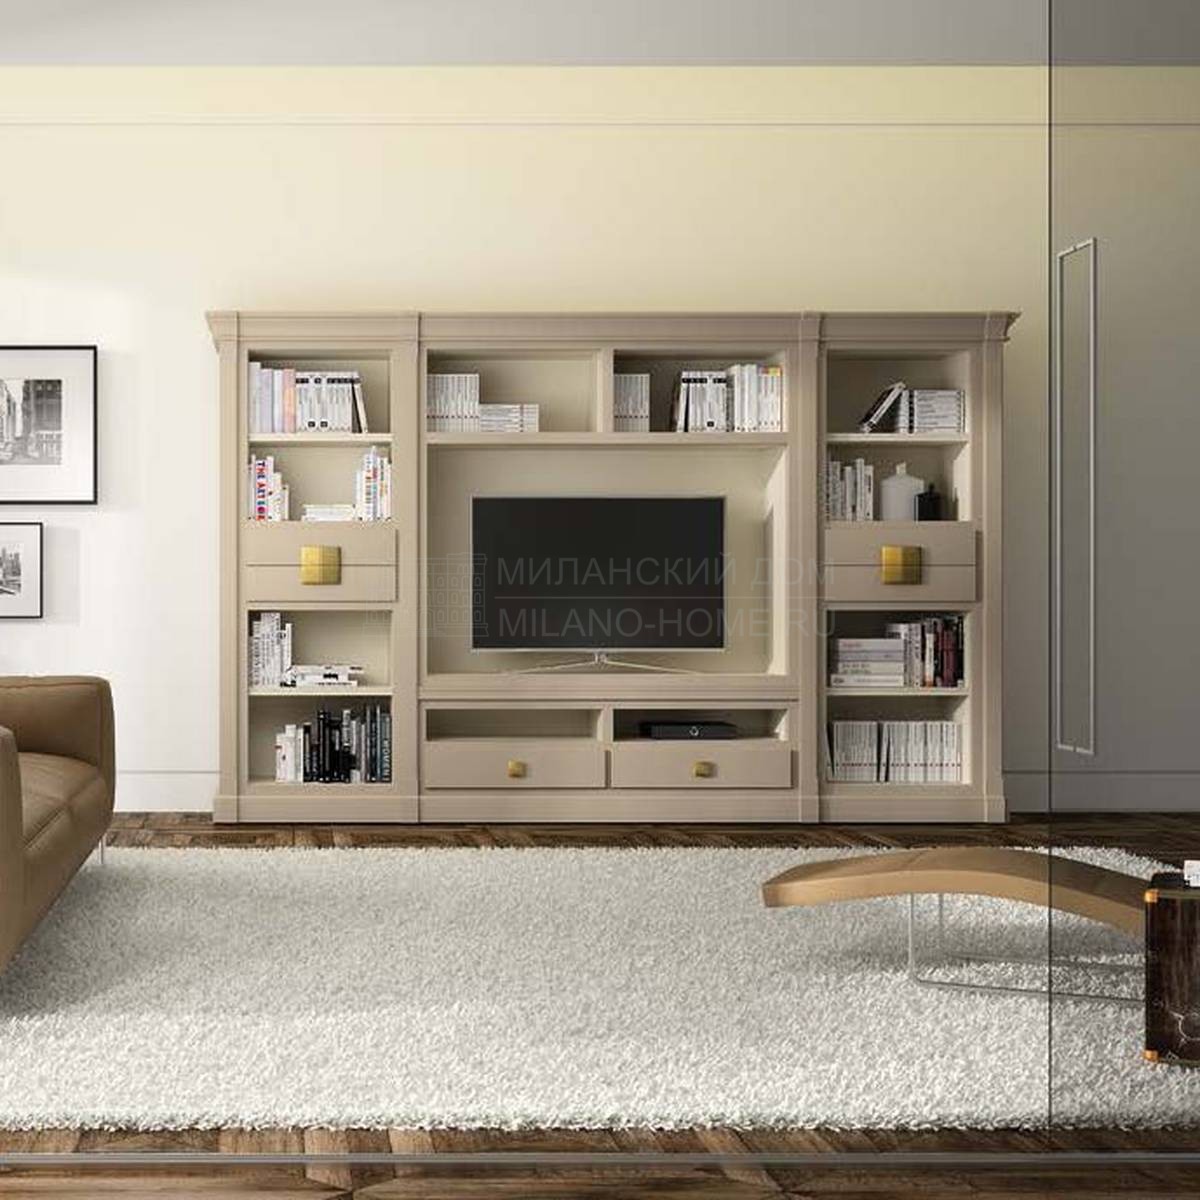 Мебель для ТВ Altair-1/Adara interiors Nomada из Испании фабрики LA EBANISTERIA